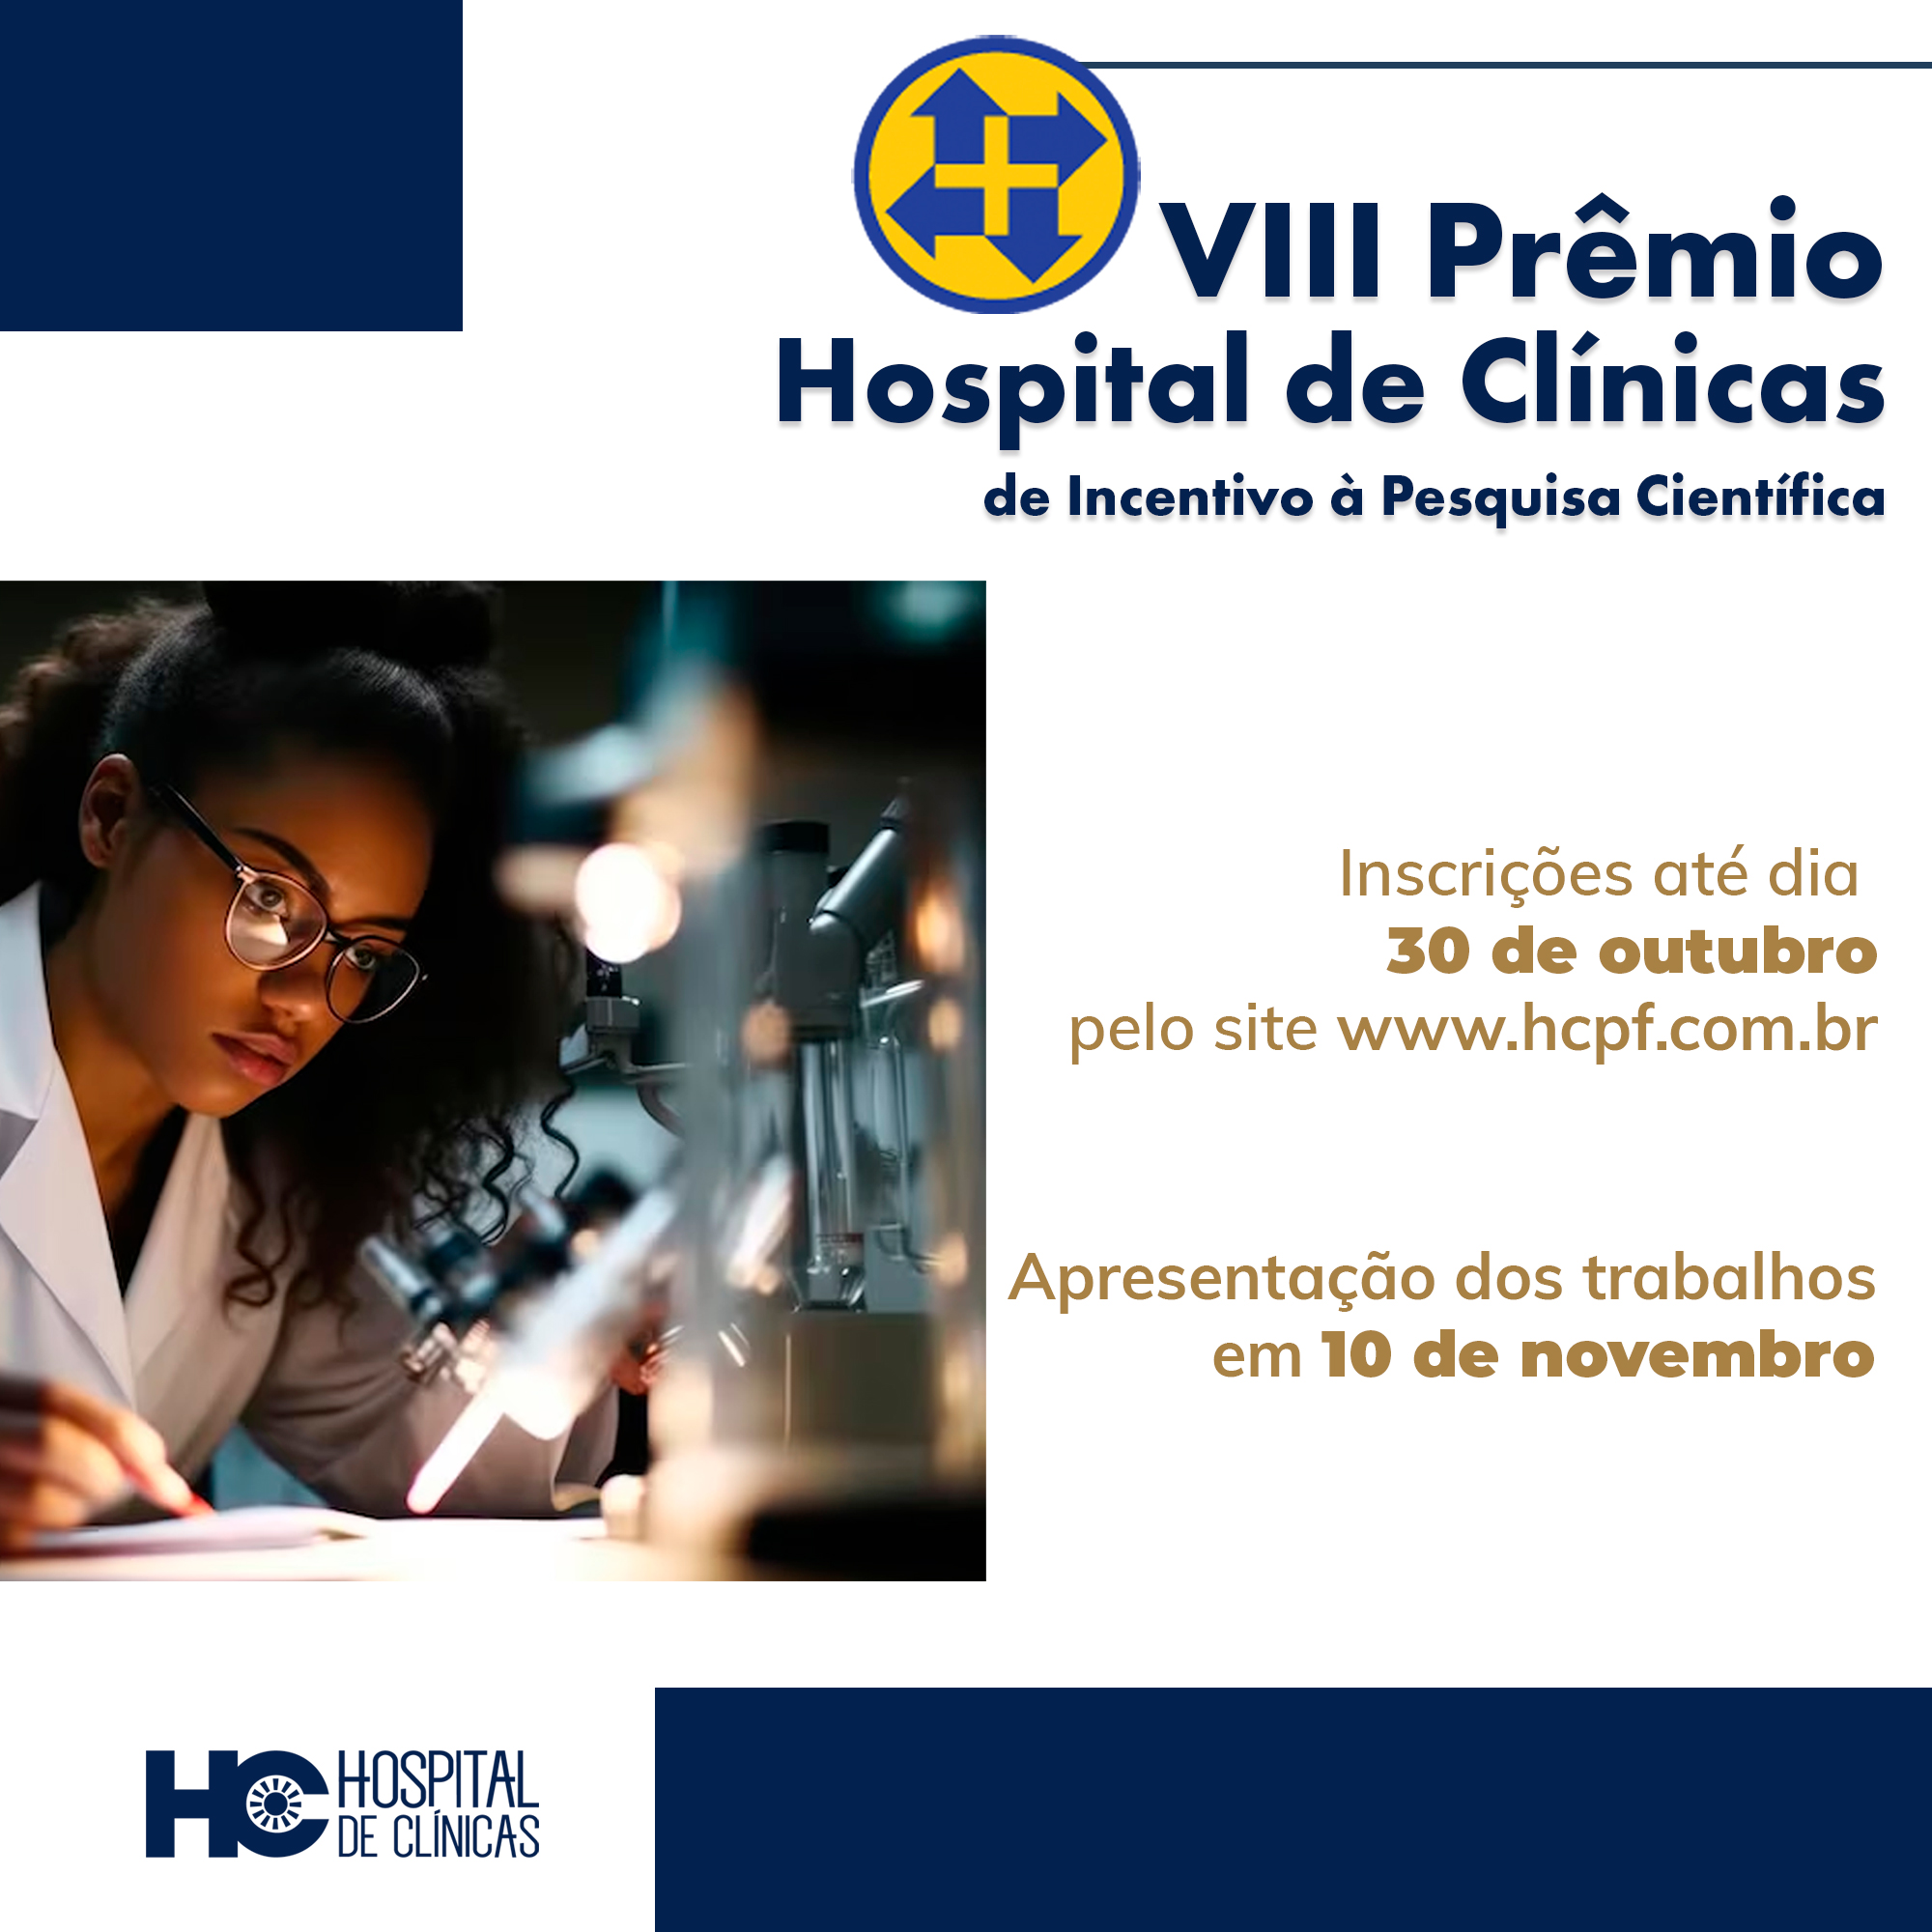 VIII Prêmio Hospital de Clínicas de Incentivo à Pesquisa Científica